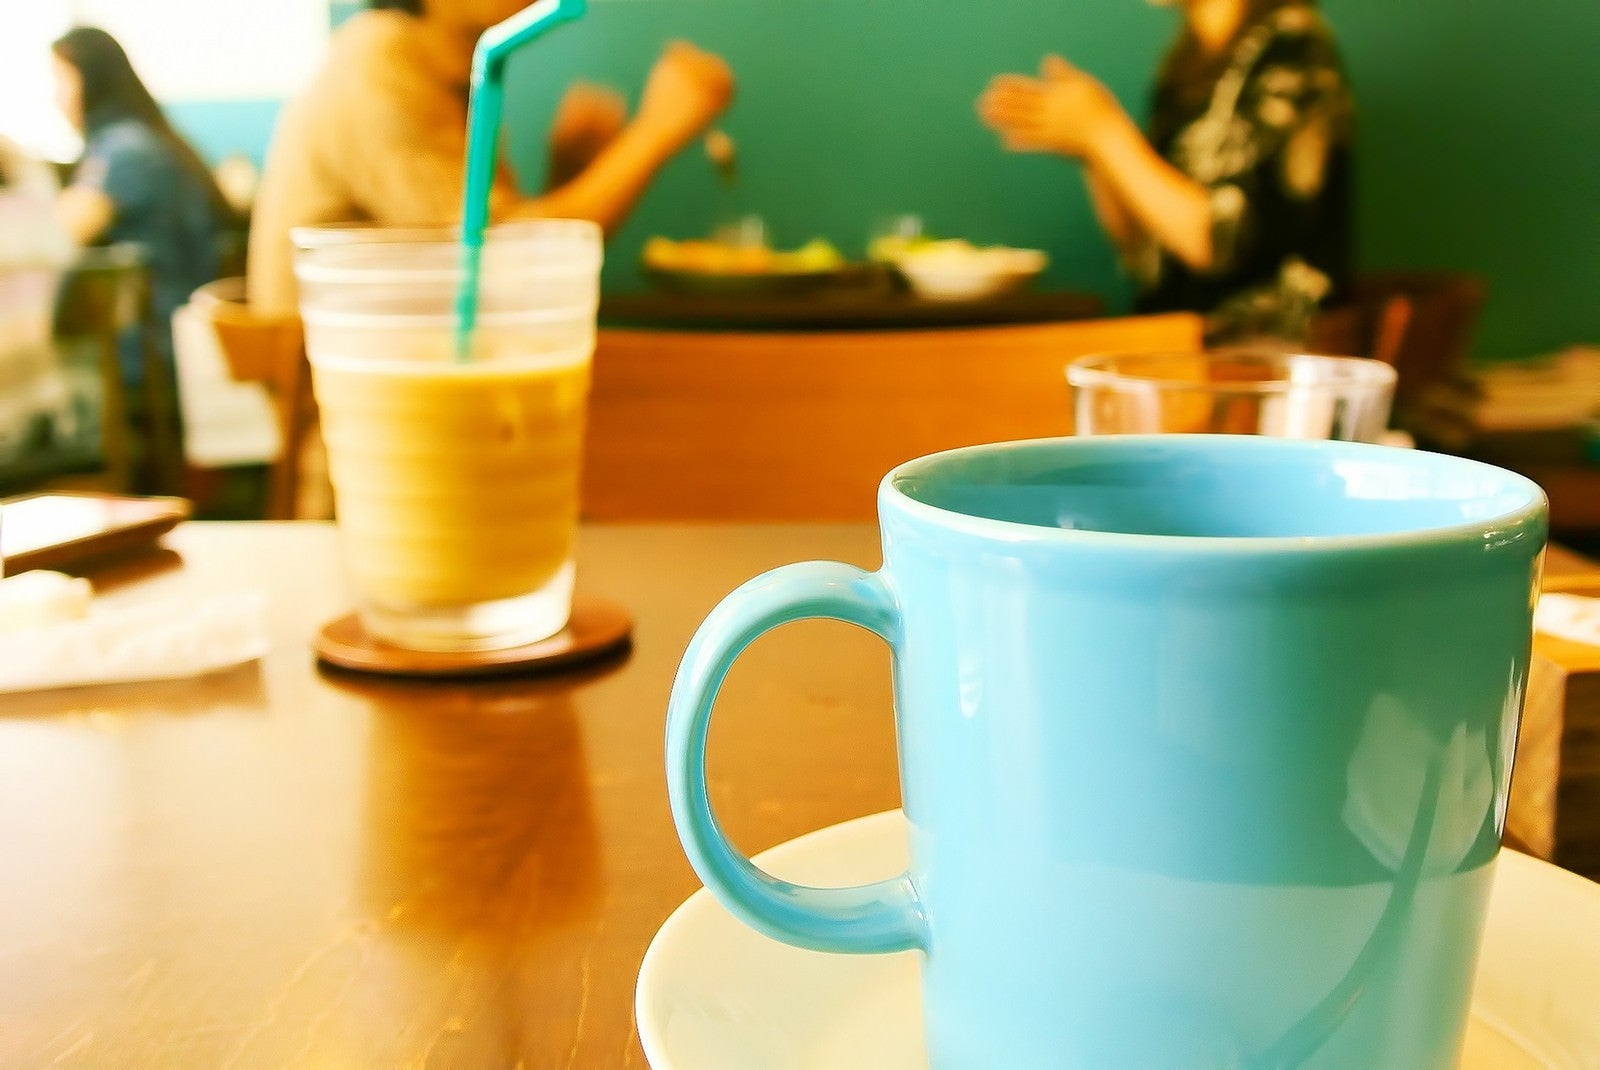 「カフェにて一休み」の写真